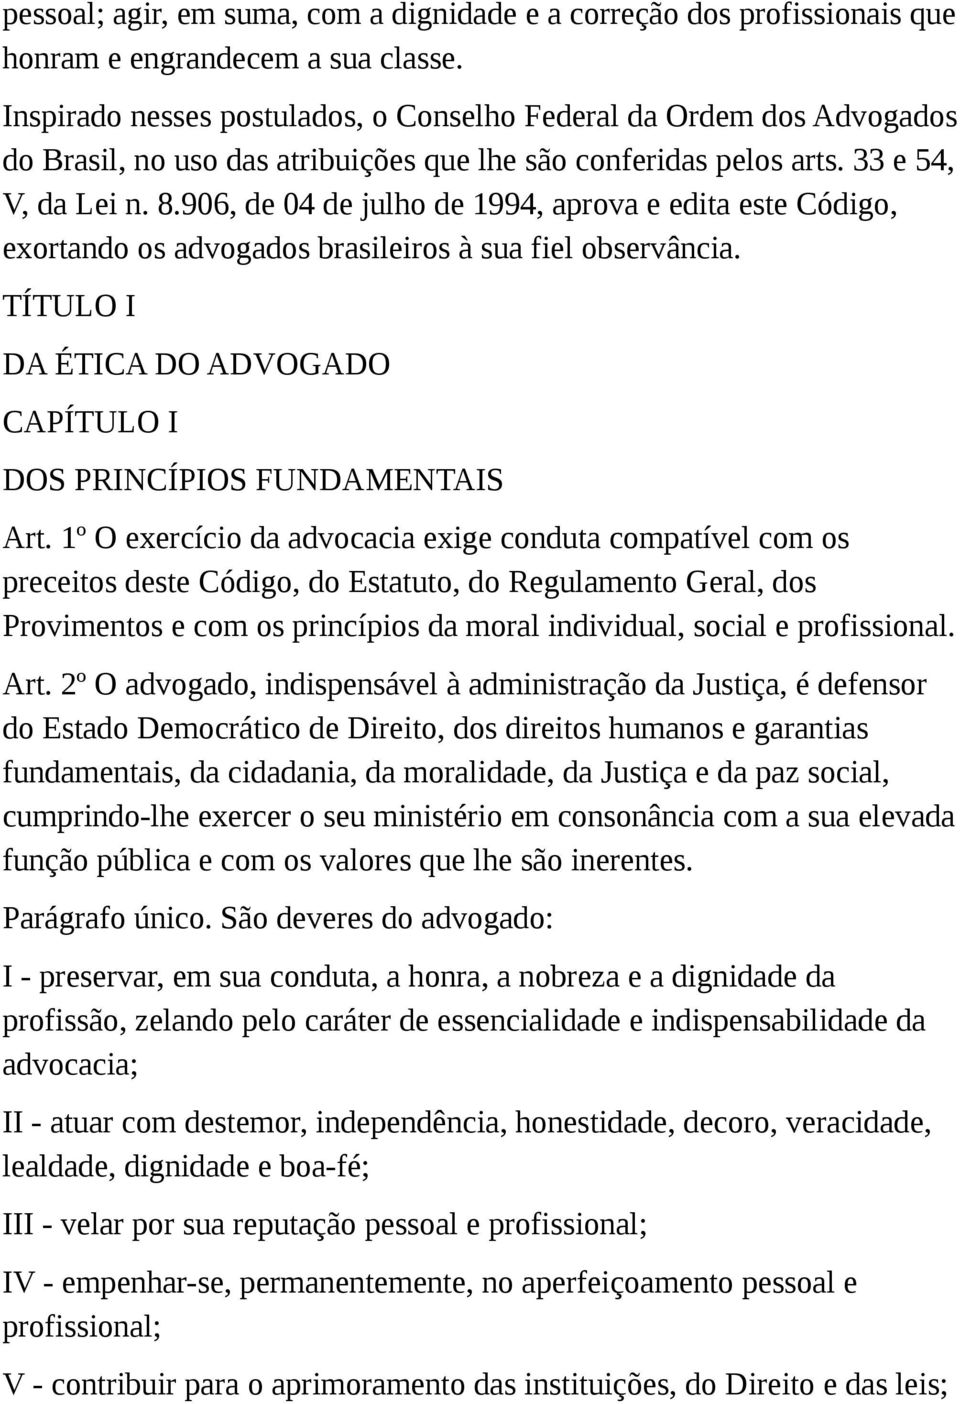 906, de 04 de julho de 1994, aprova e edita este Código, exortando os advogados brasileiros à sua fiel observância. TÍTULO I DA ÉTICA DO ADVOGADO CAPÍTULO I DOS PRINCÍPIOS FUNDAMENTAIS Art.